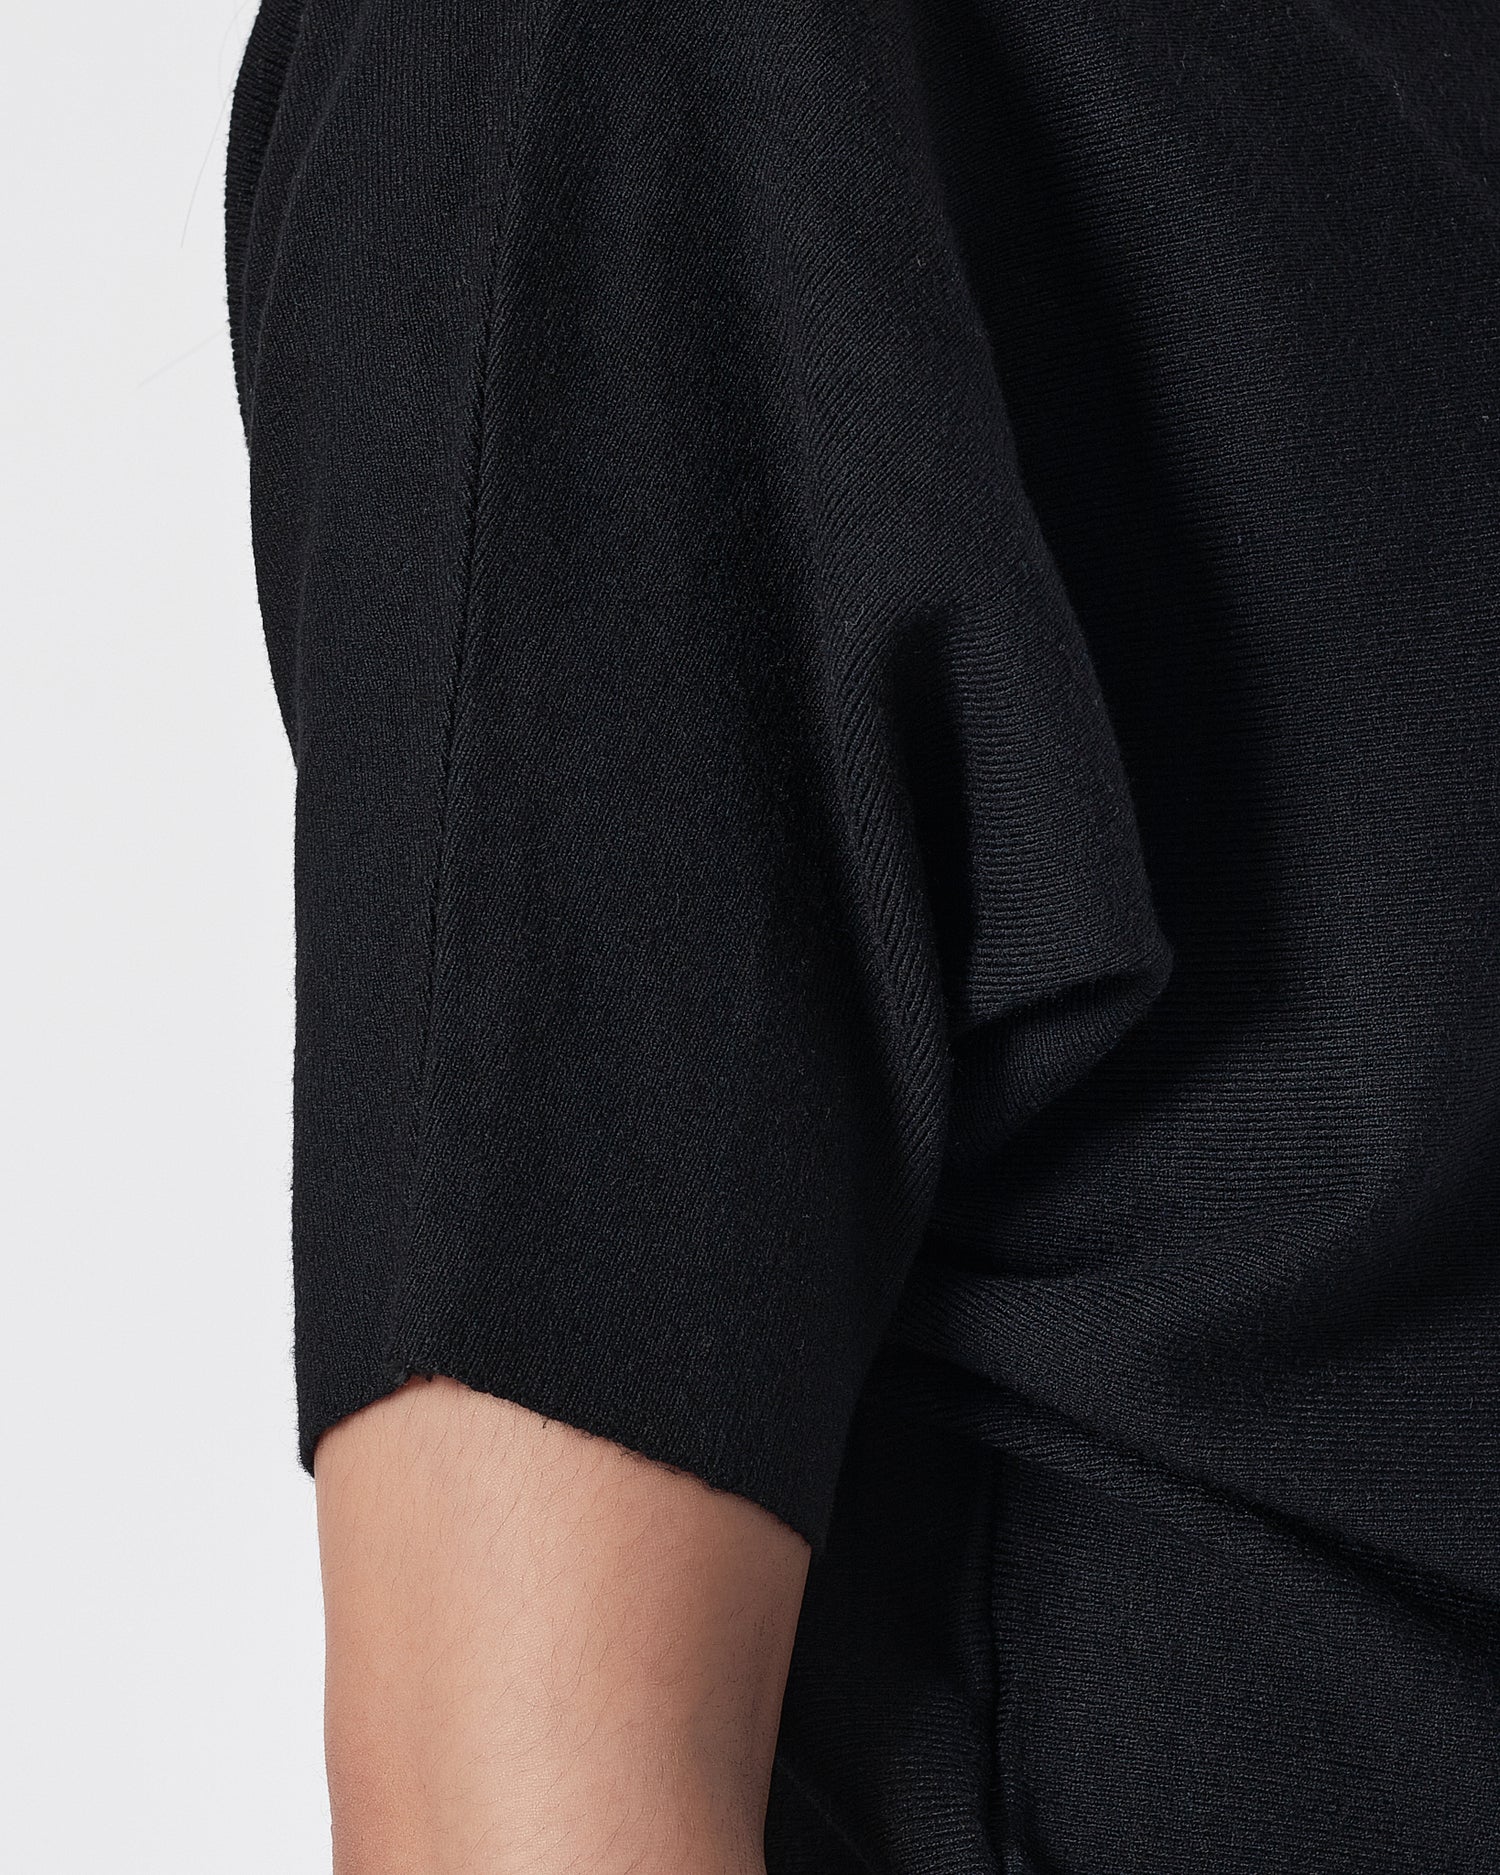 Plain Color Soft Knit Lady Black T-Shirt 14.90